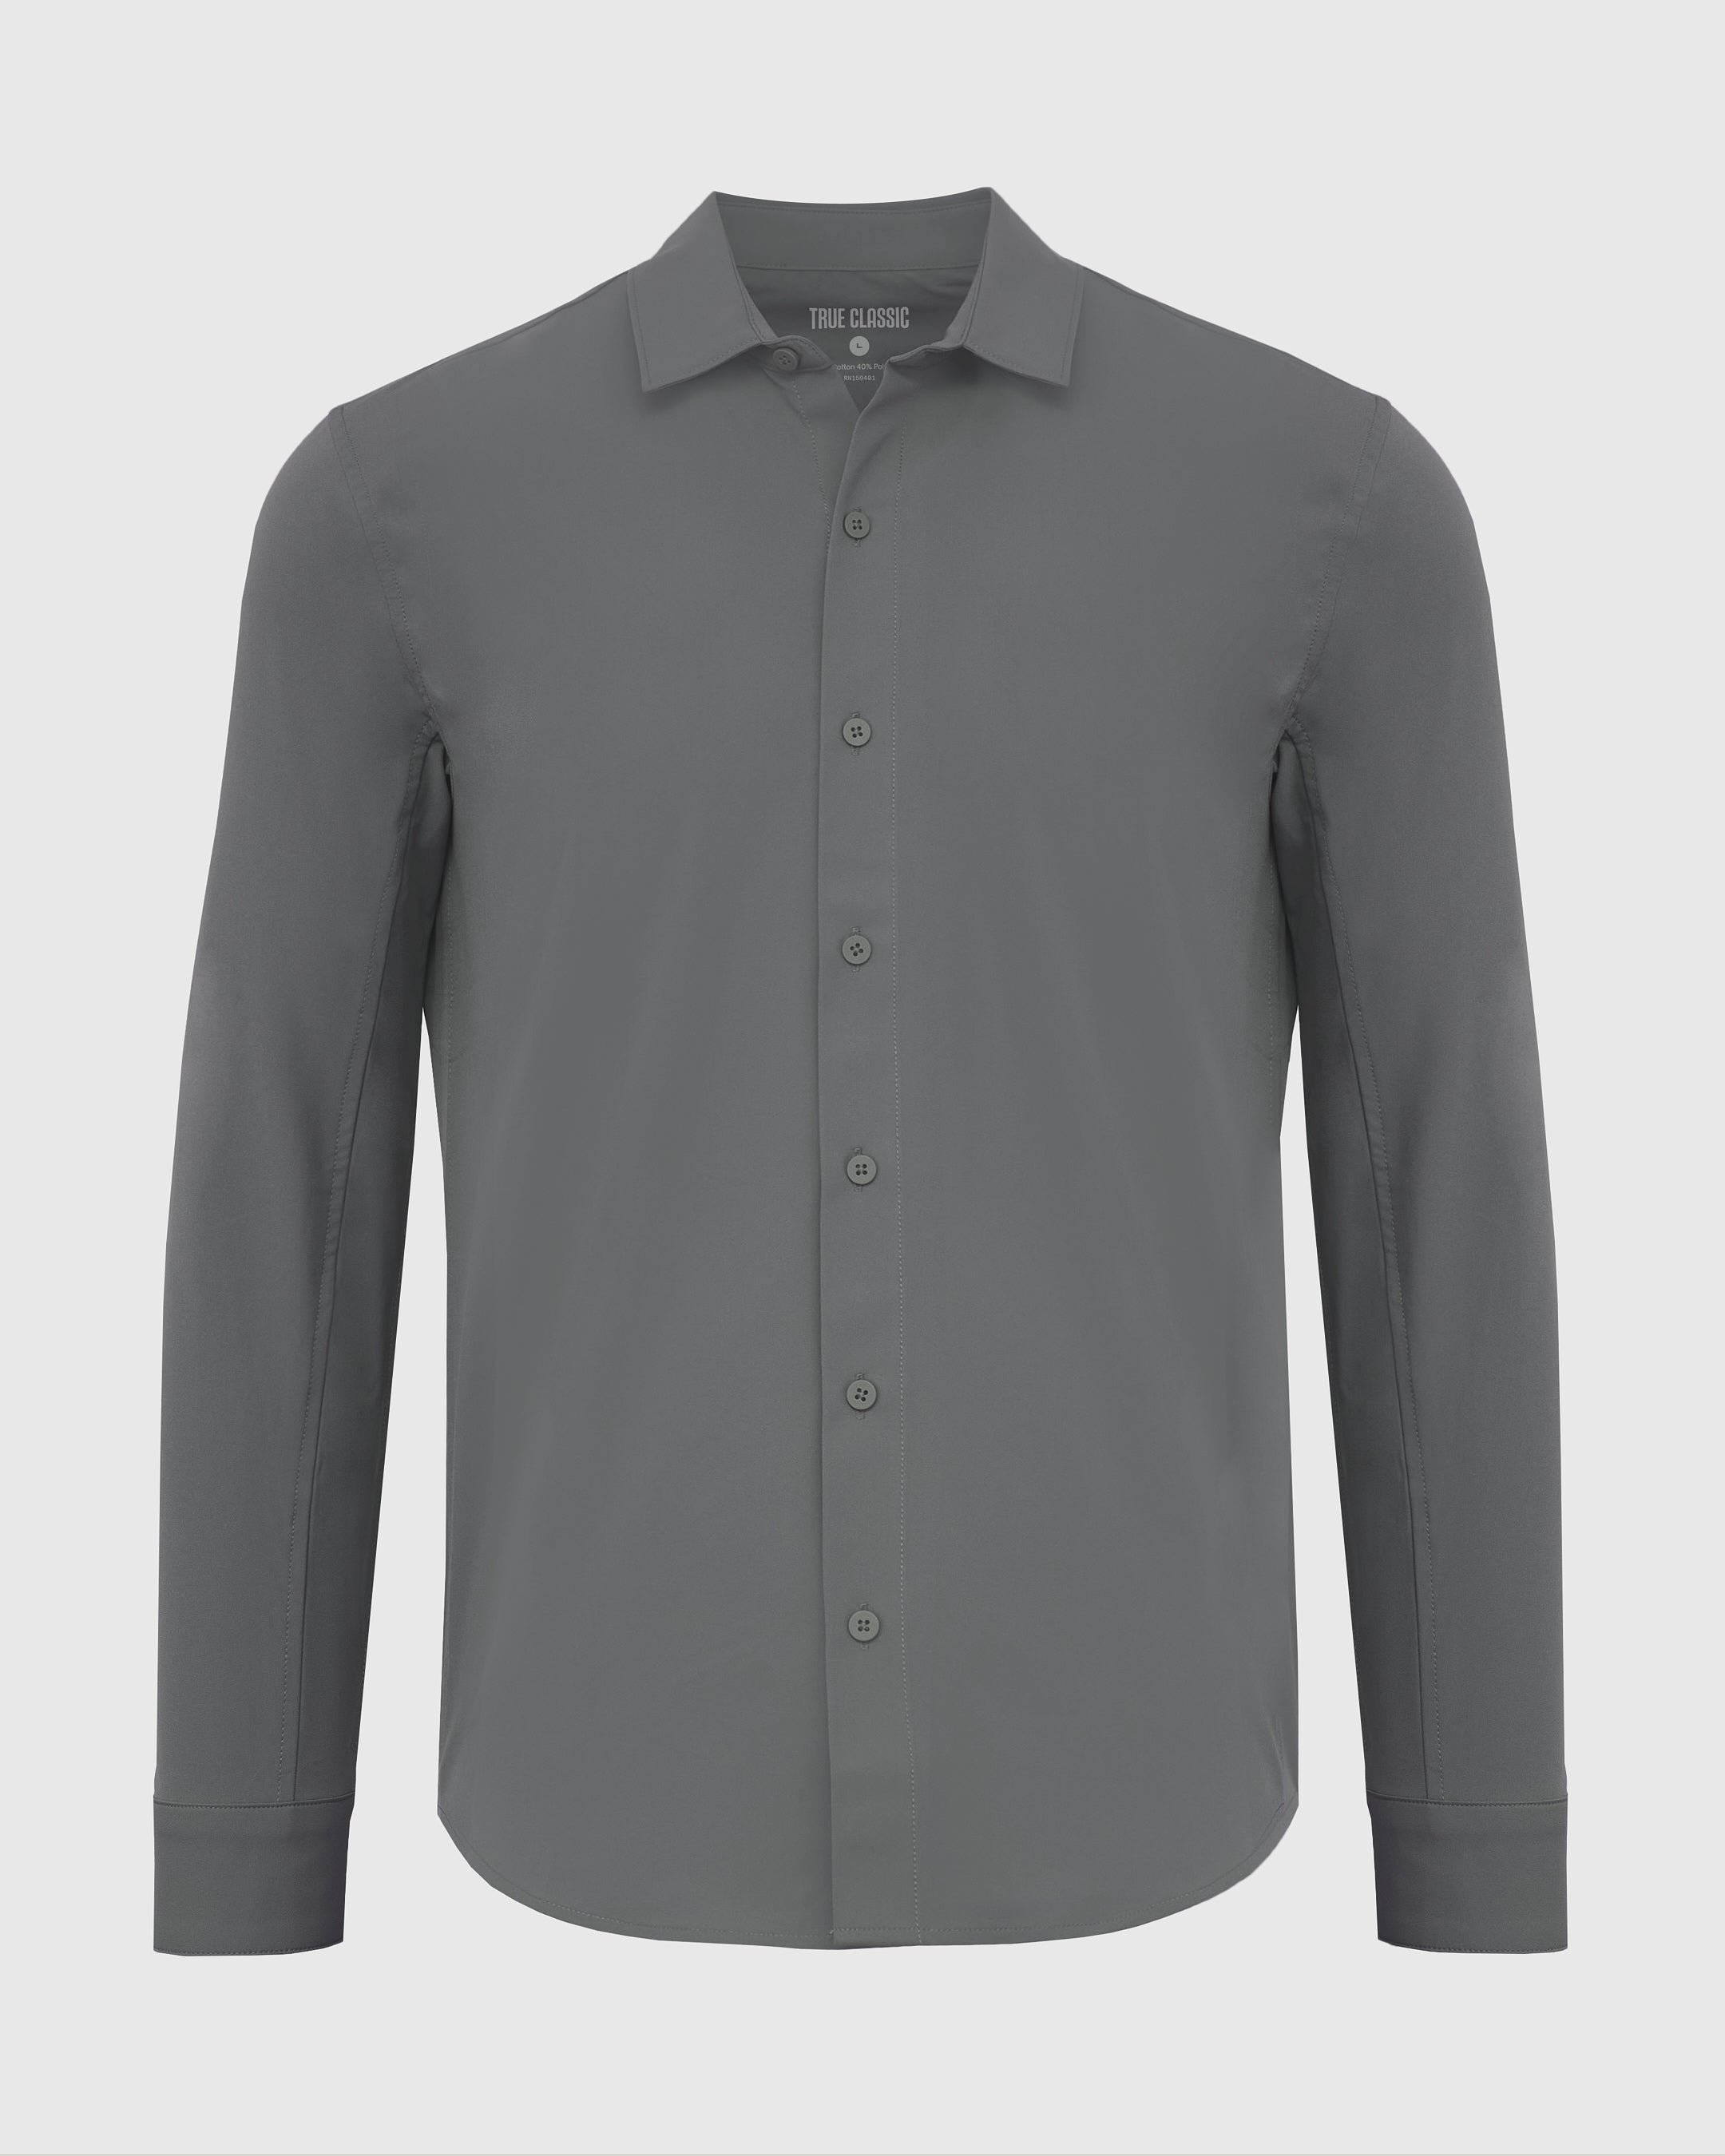 Carbon Commuter Long Sleeve Button Up Shirt